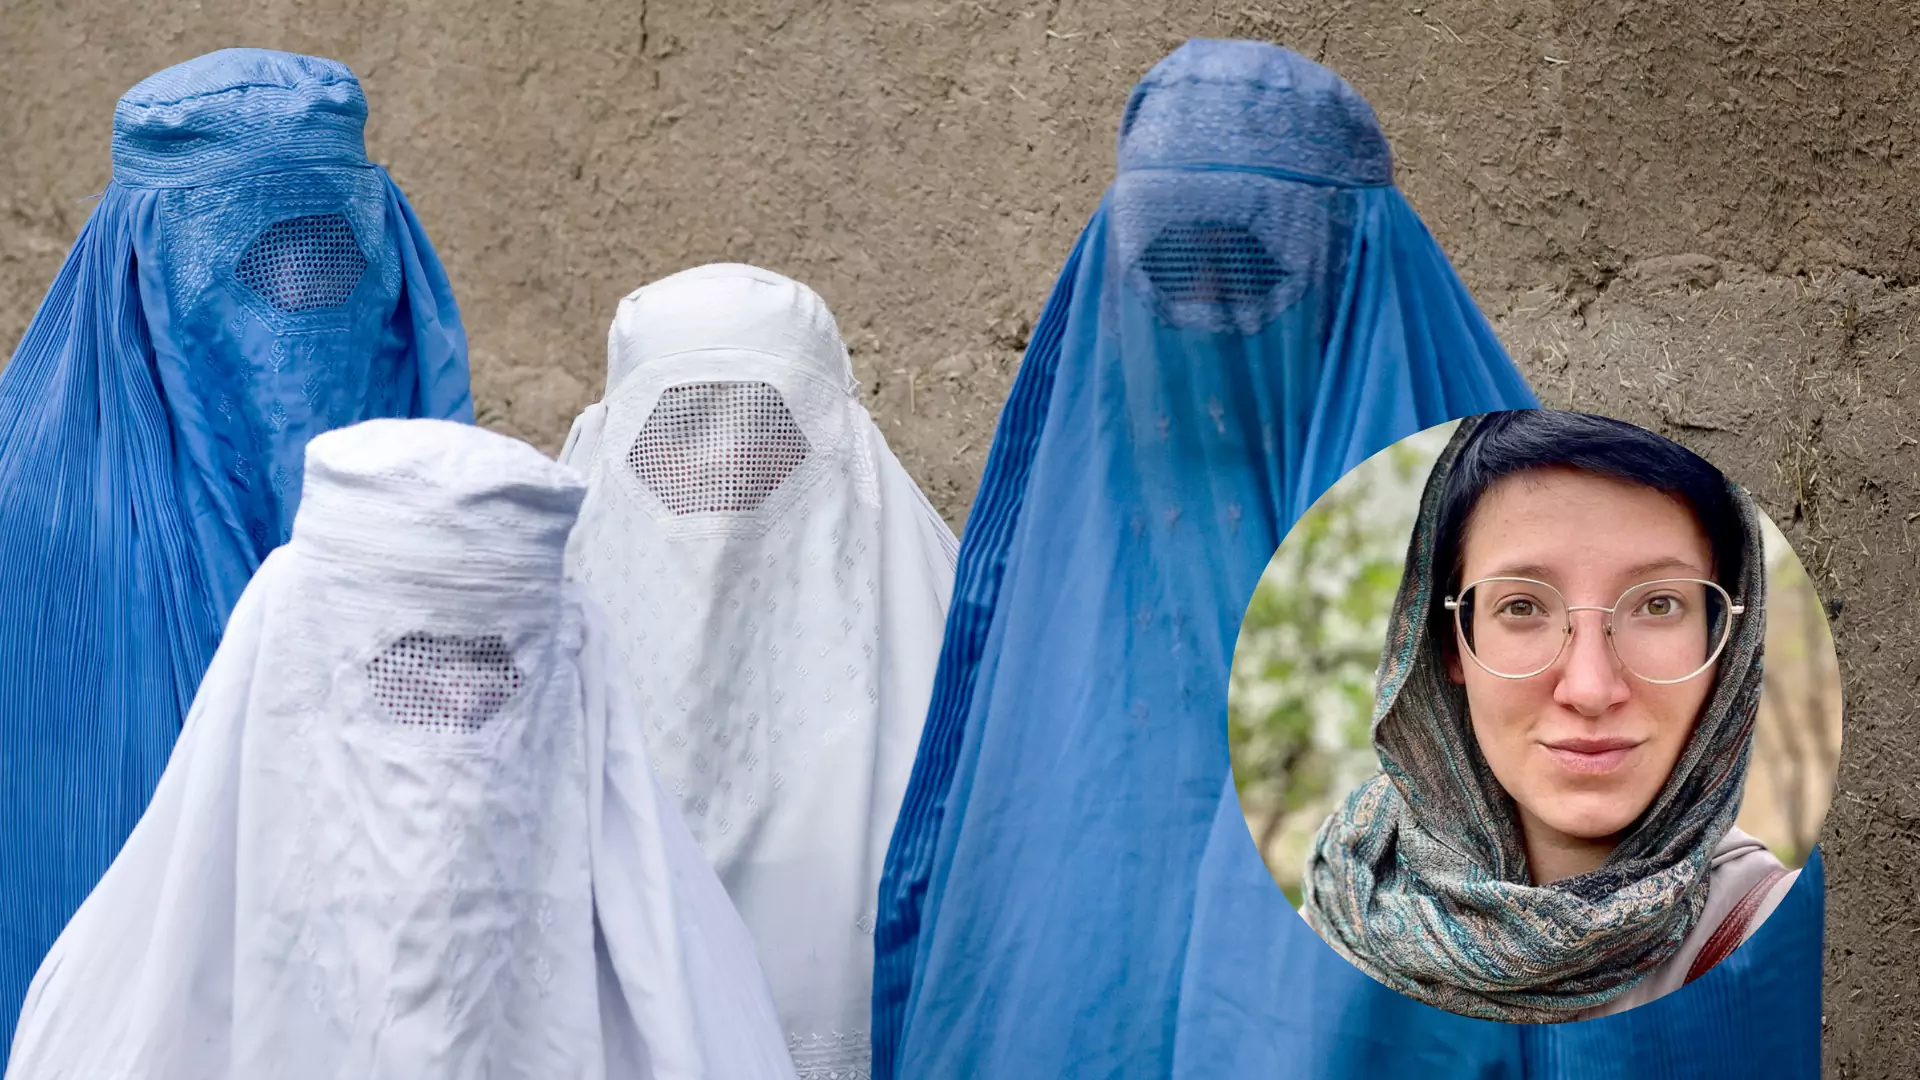 Talibowie odbierają kobietom resztę praw. "Afganki straciły już wszystko"